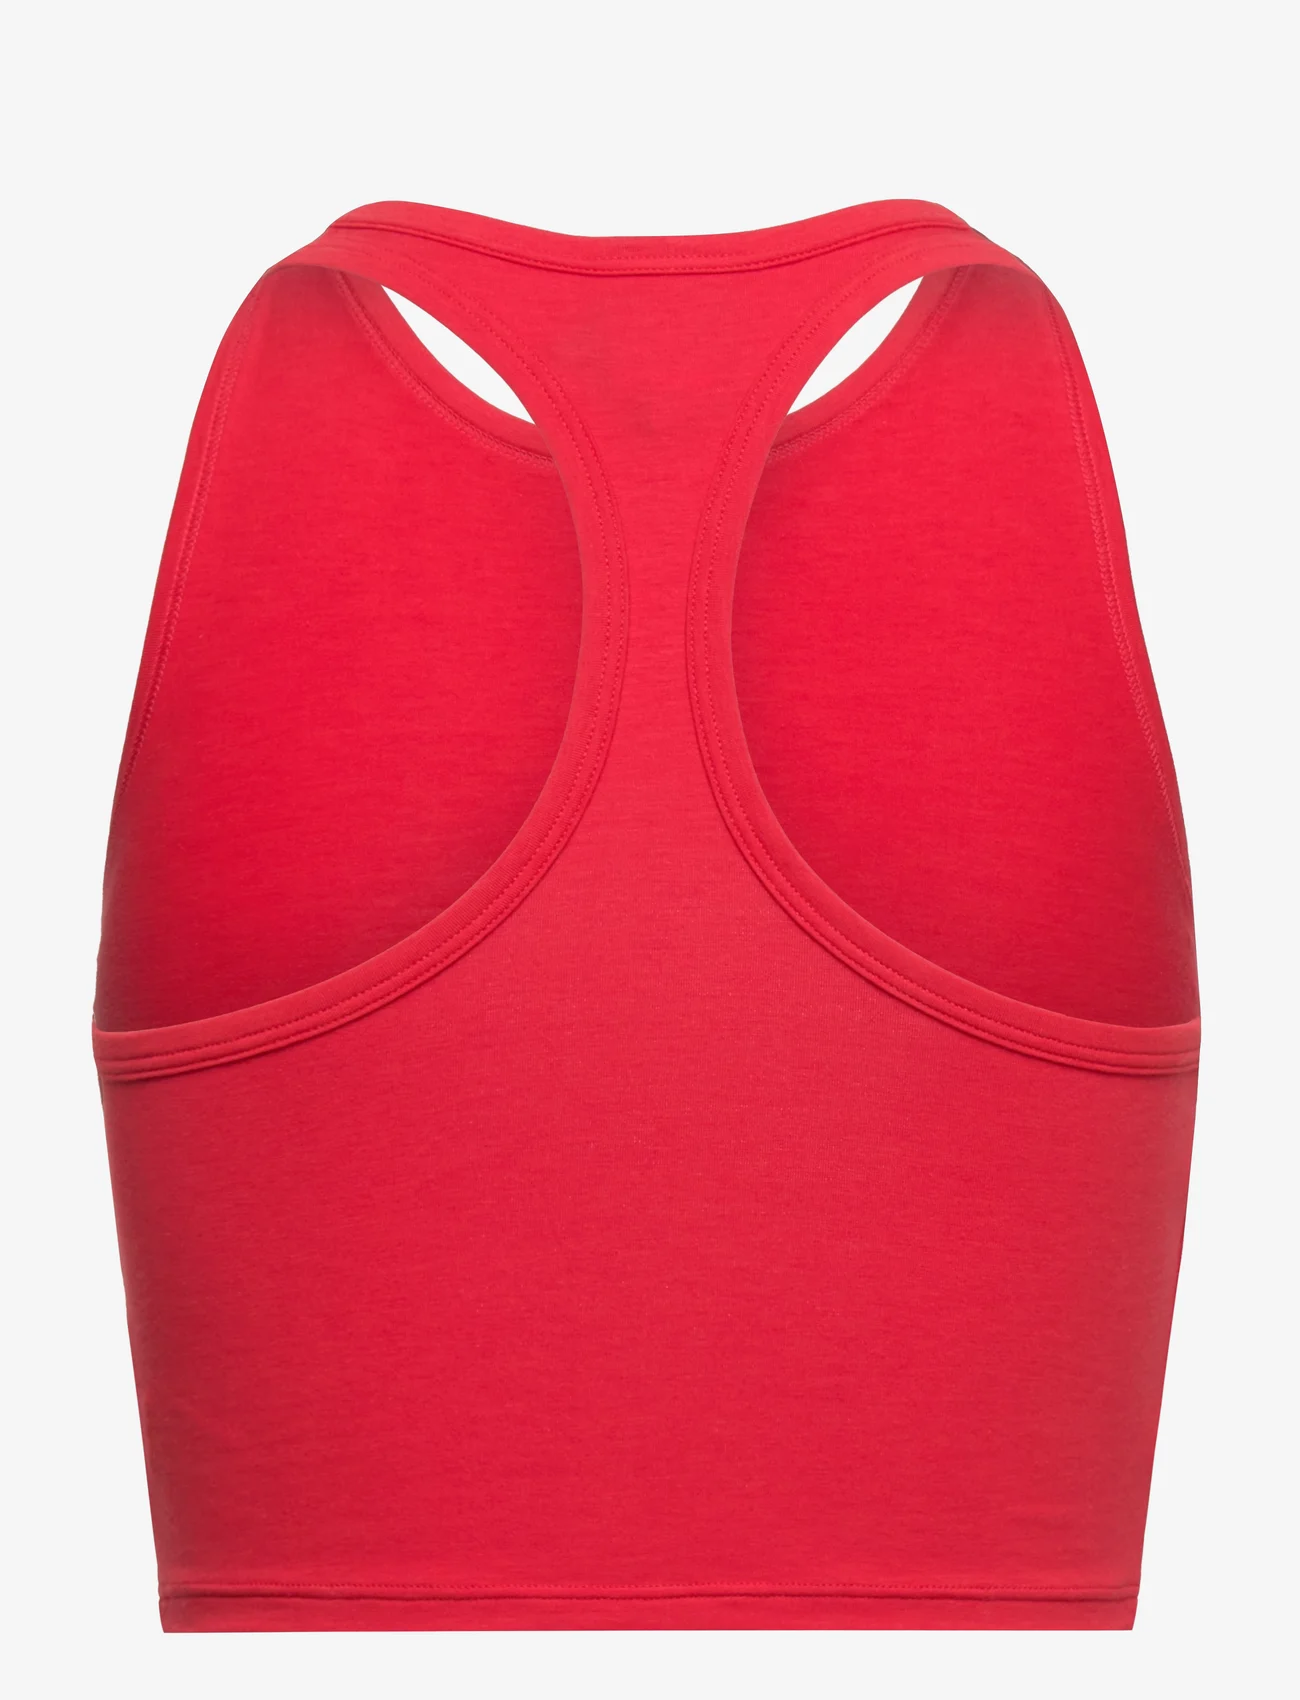 adidas Originals Underwear - Bustier - crop tops - red - 1